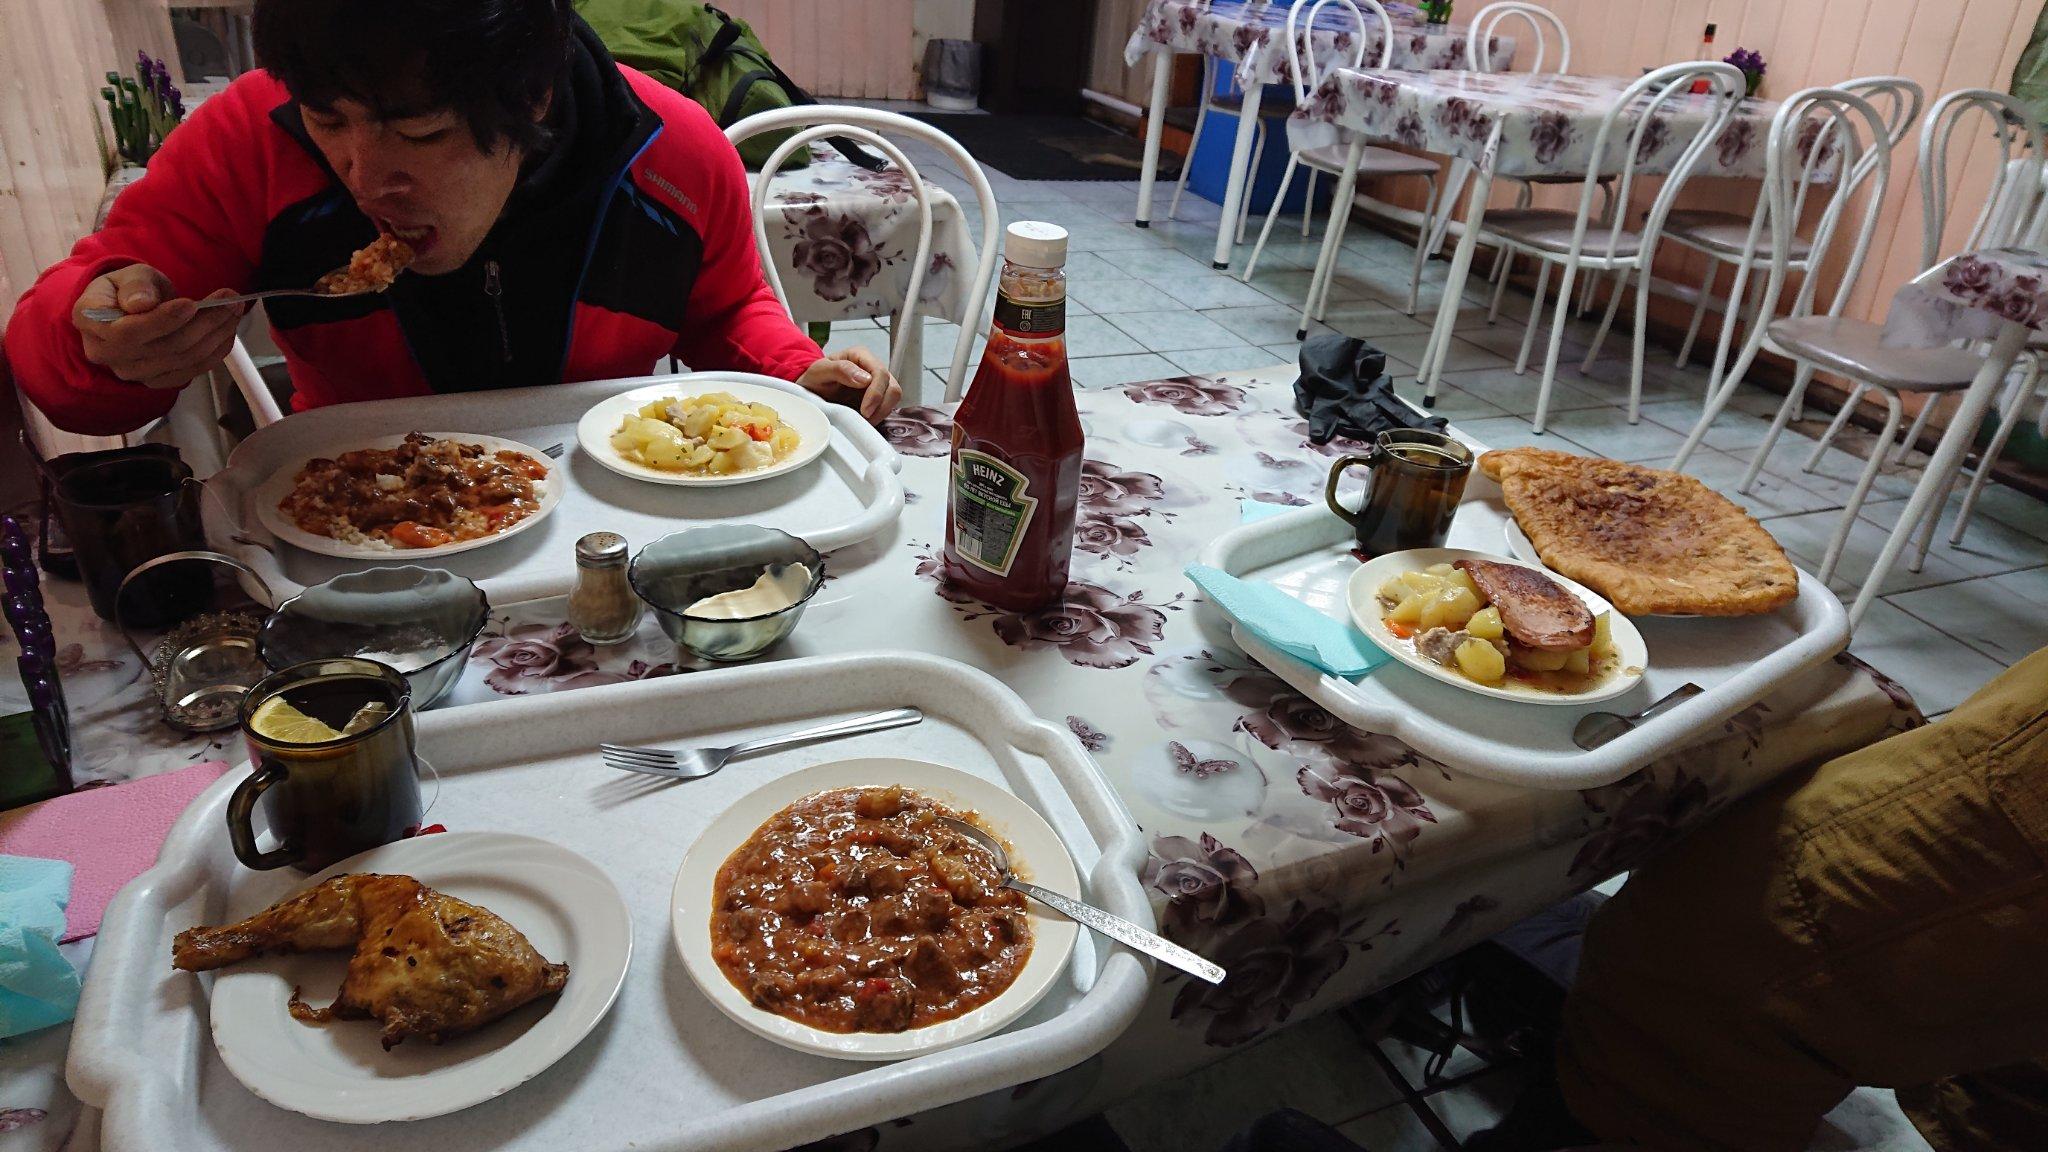 テーブルの上にある数種類の食事と男性

中程度の精度で自動的に生成された説明